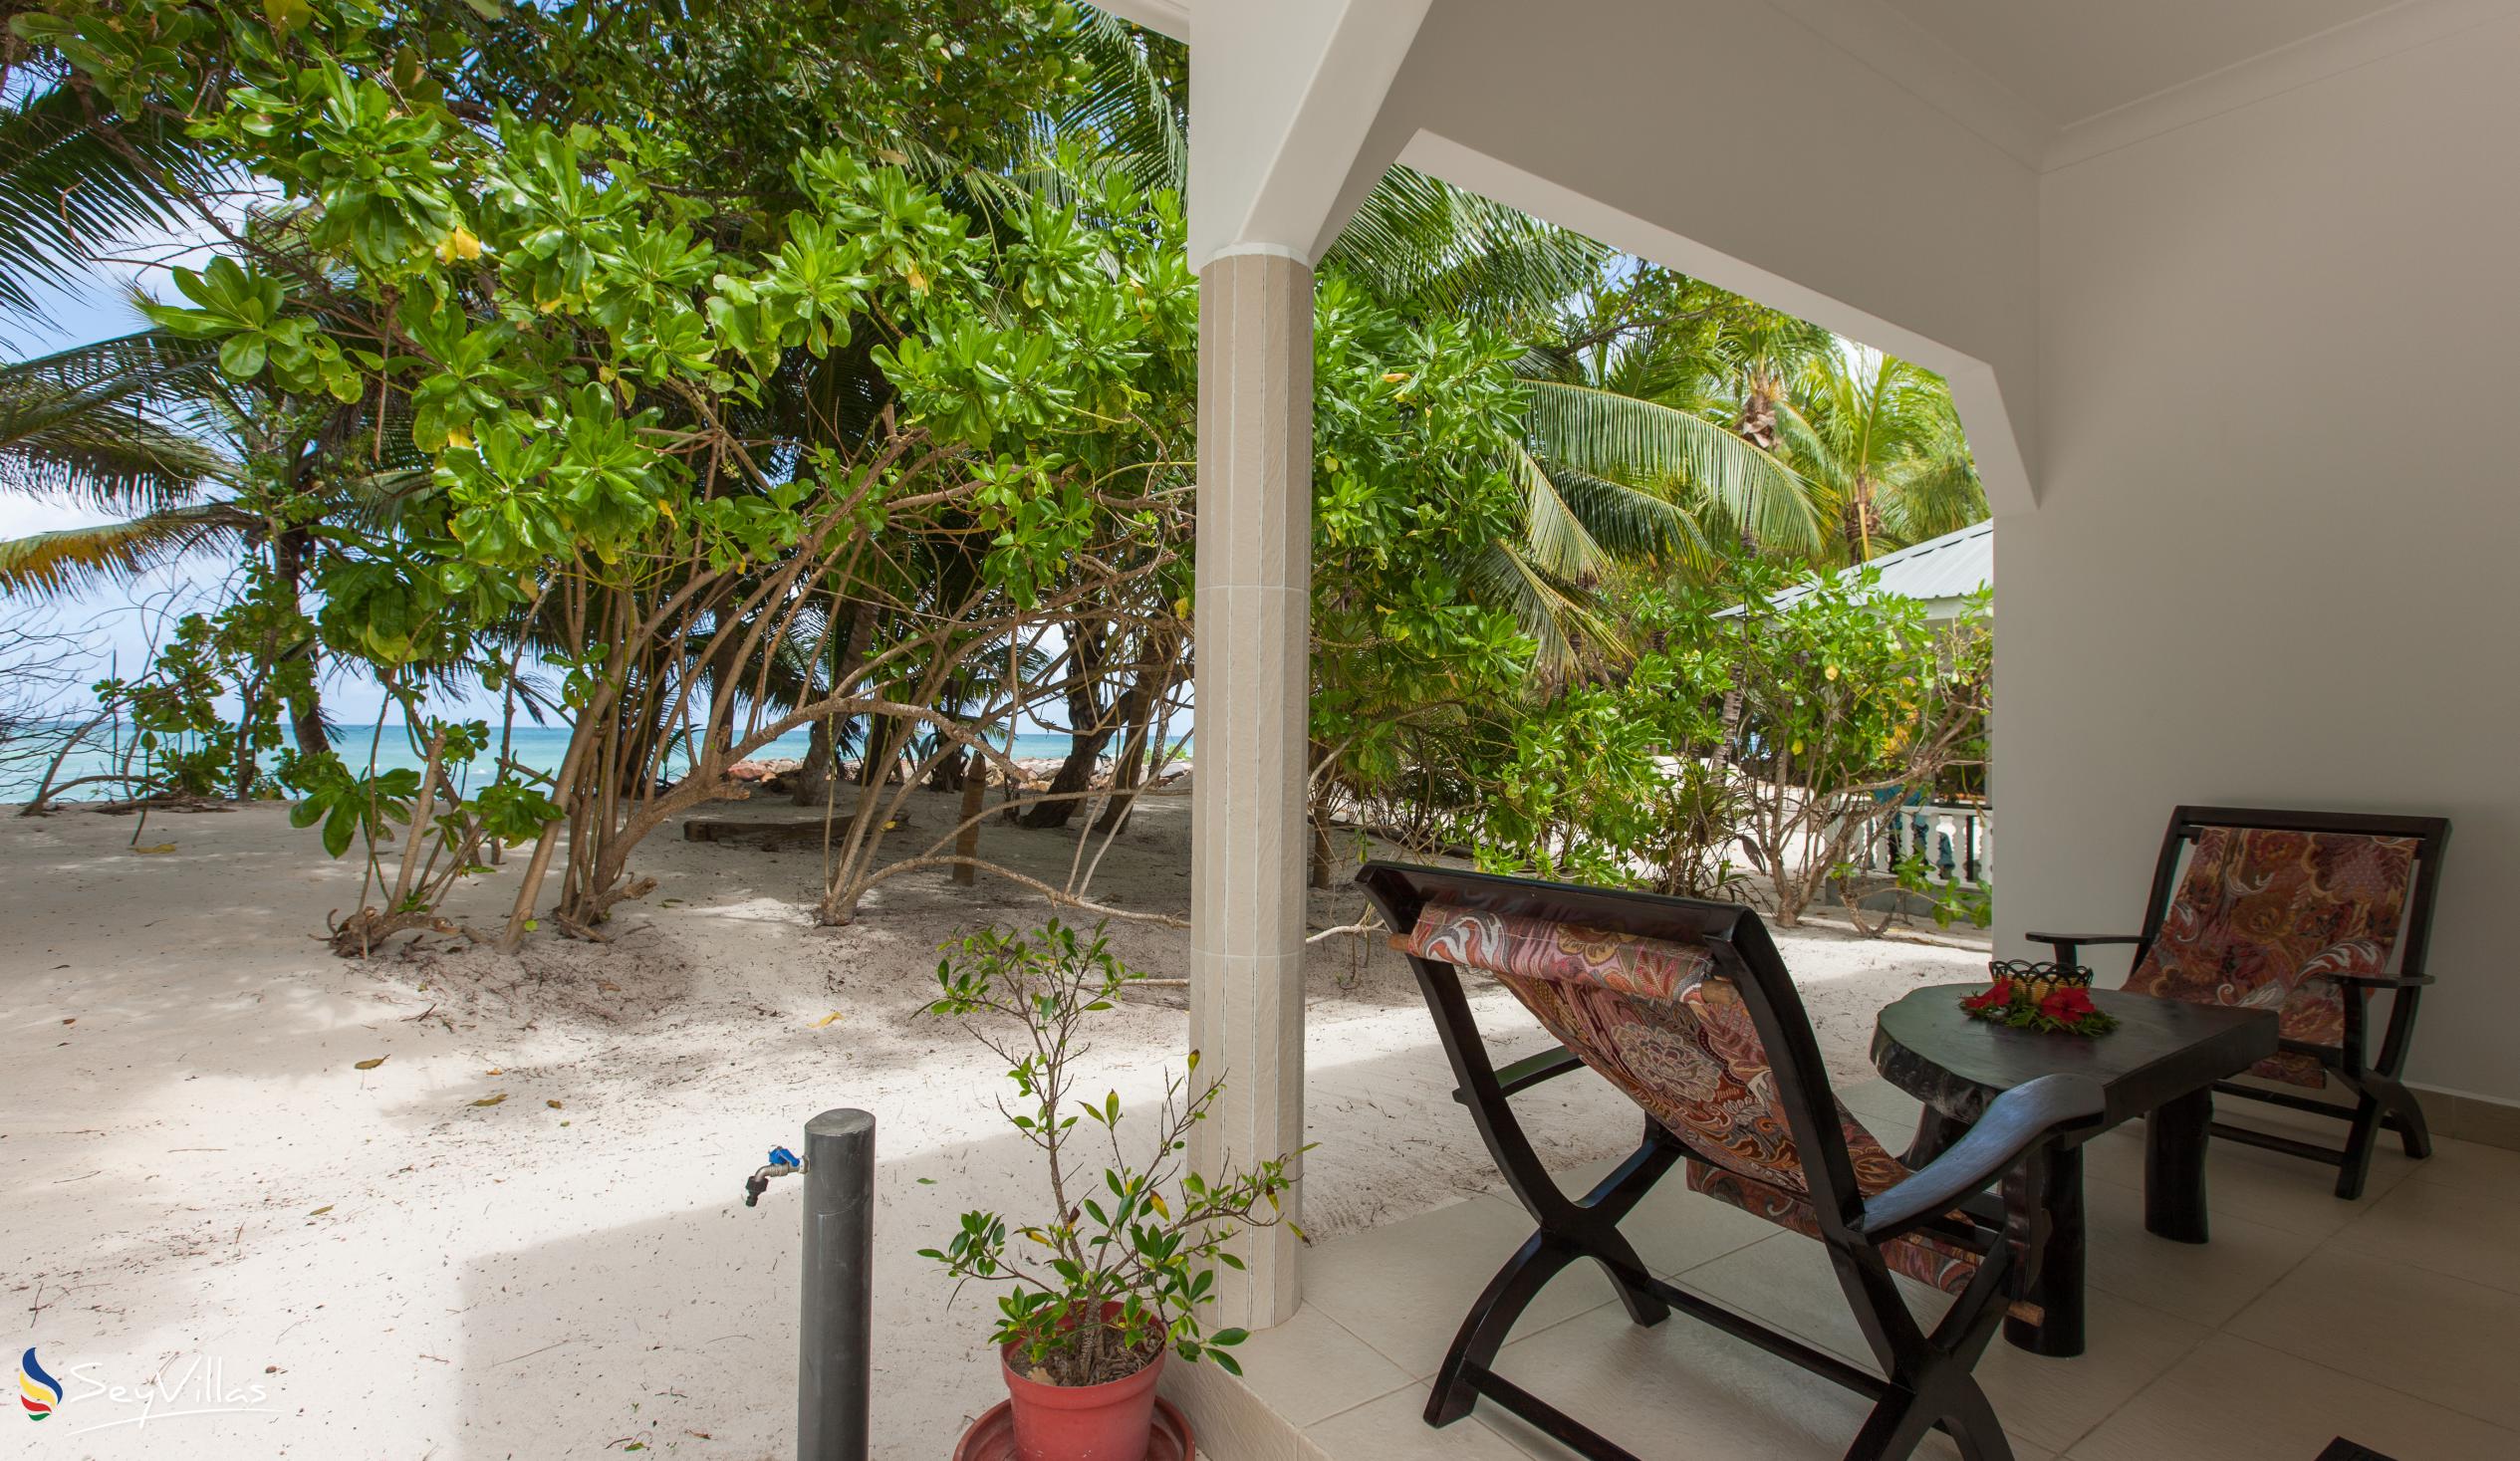 Foto 7: Villa Admiral - Aussenbereich - Praslin (Seychellen)